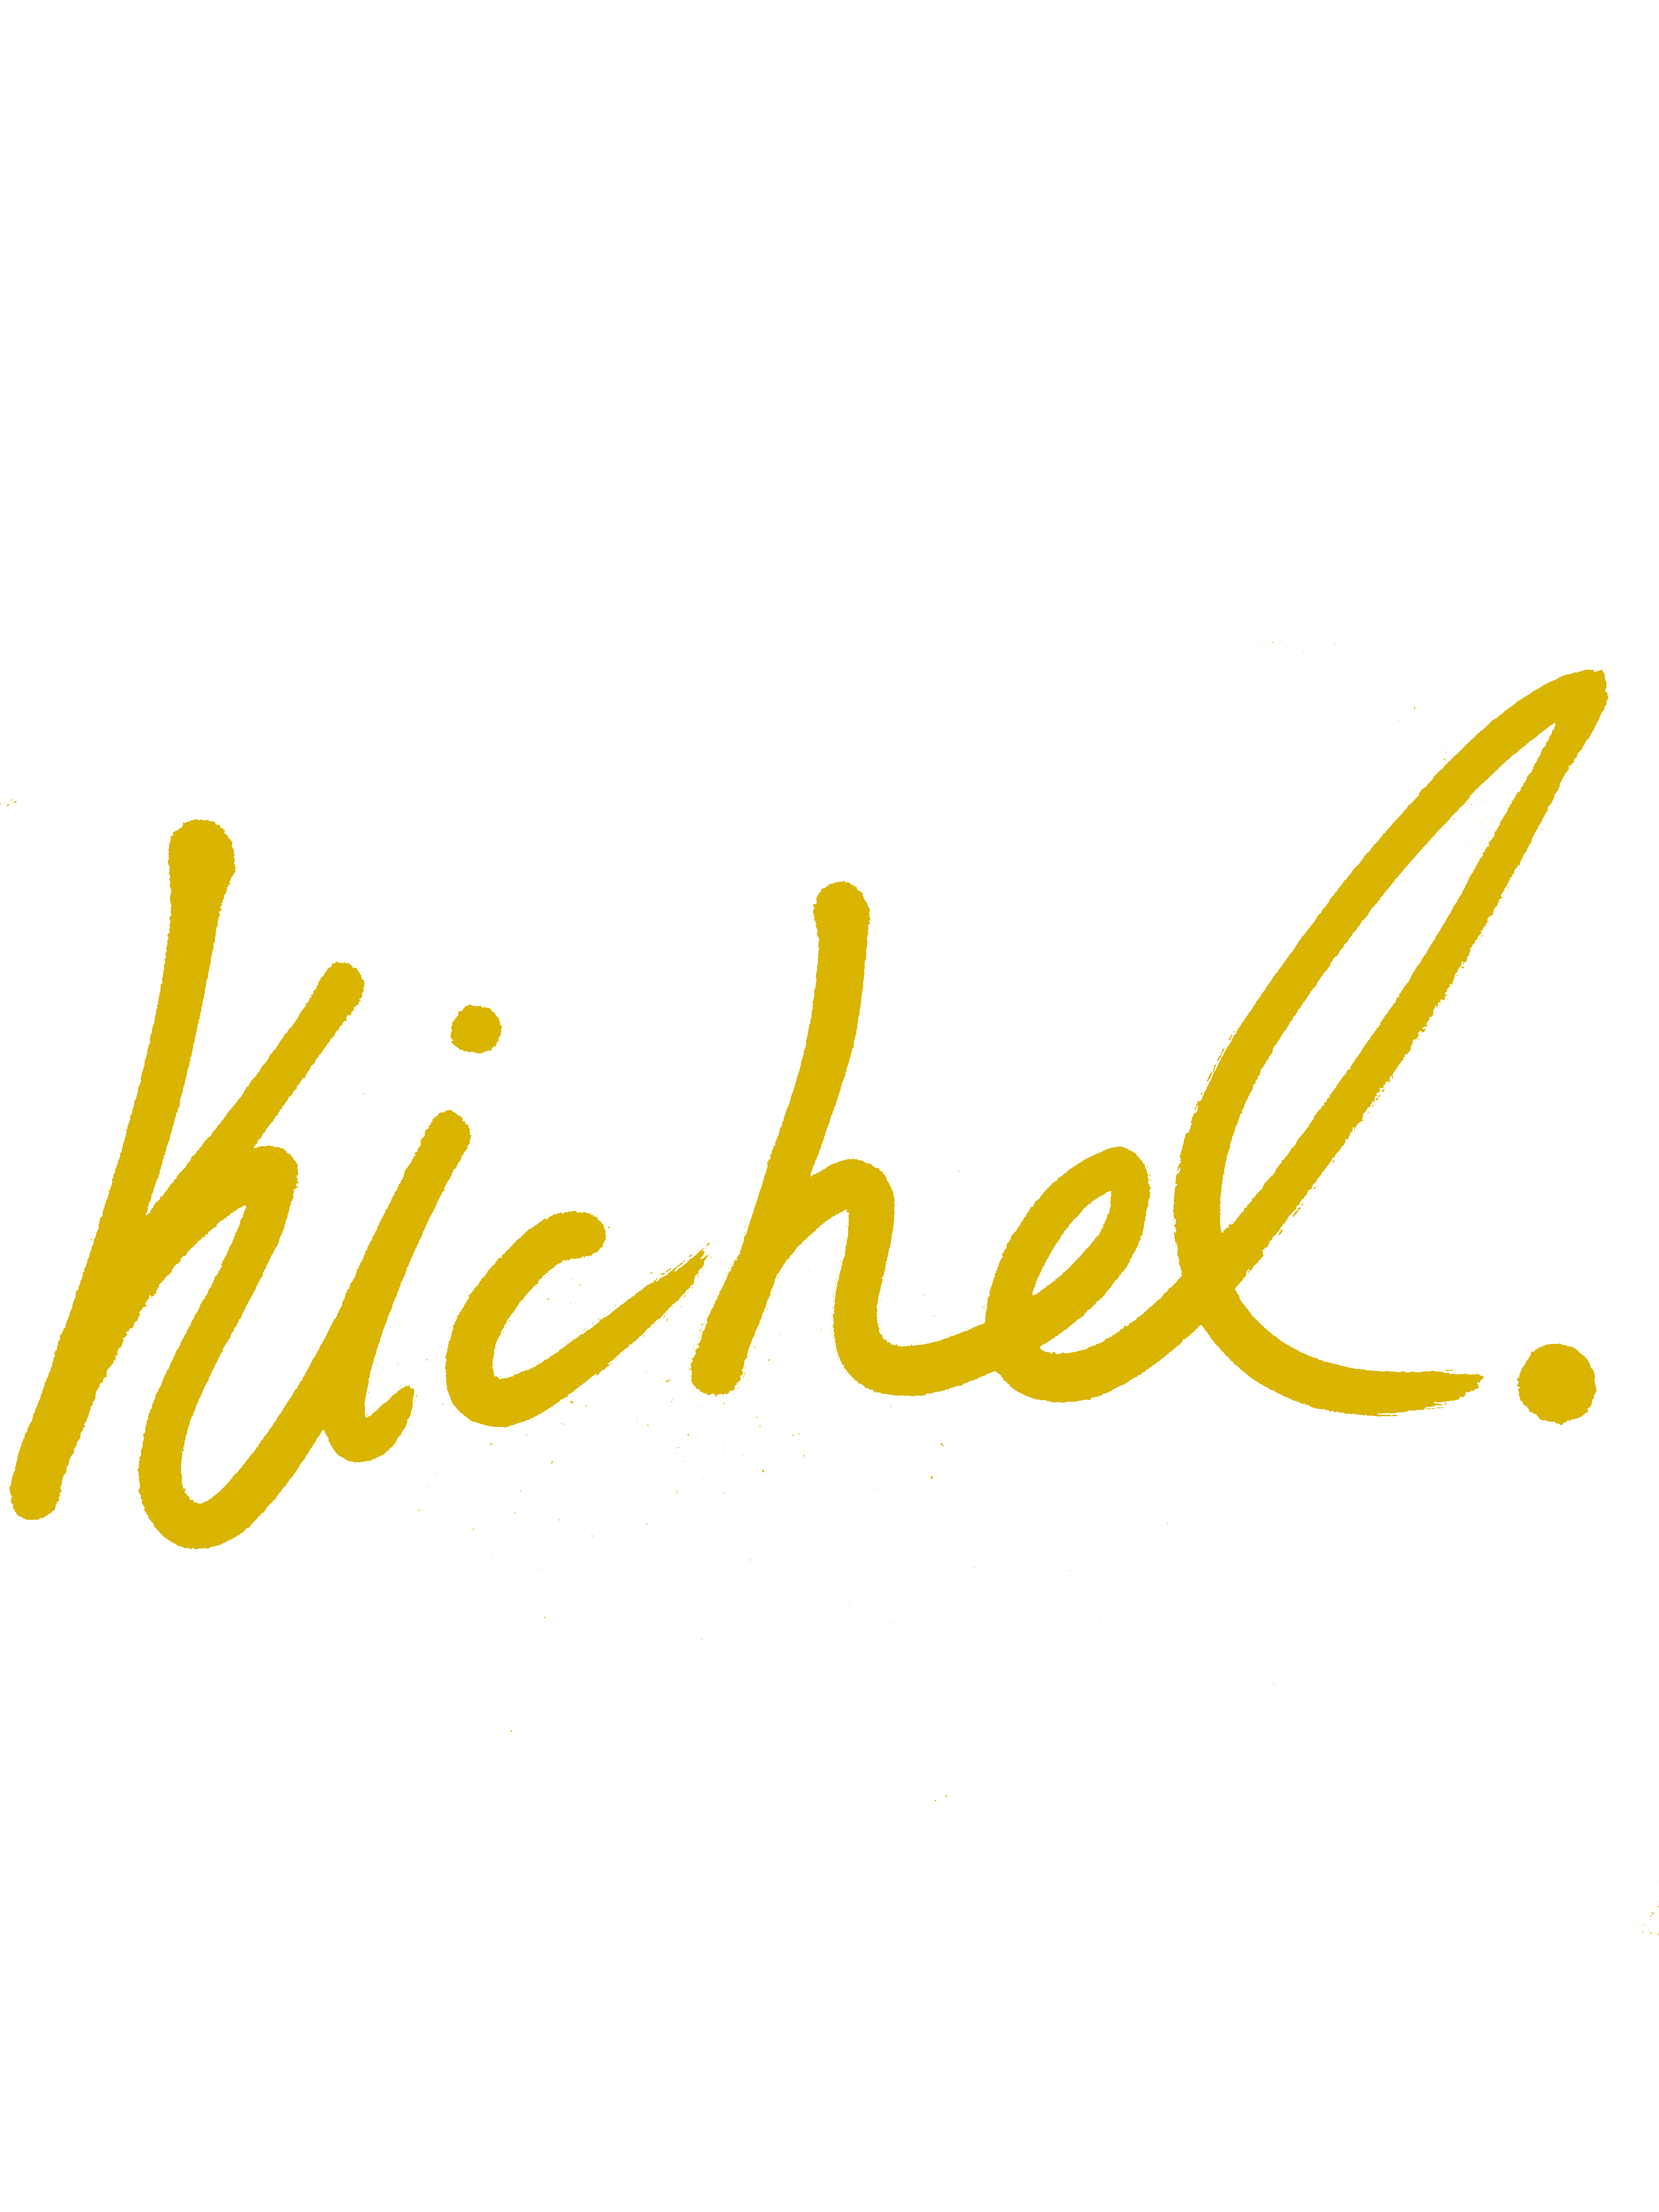 Kichel